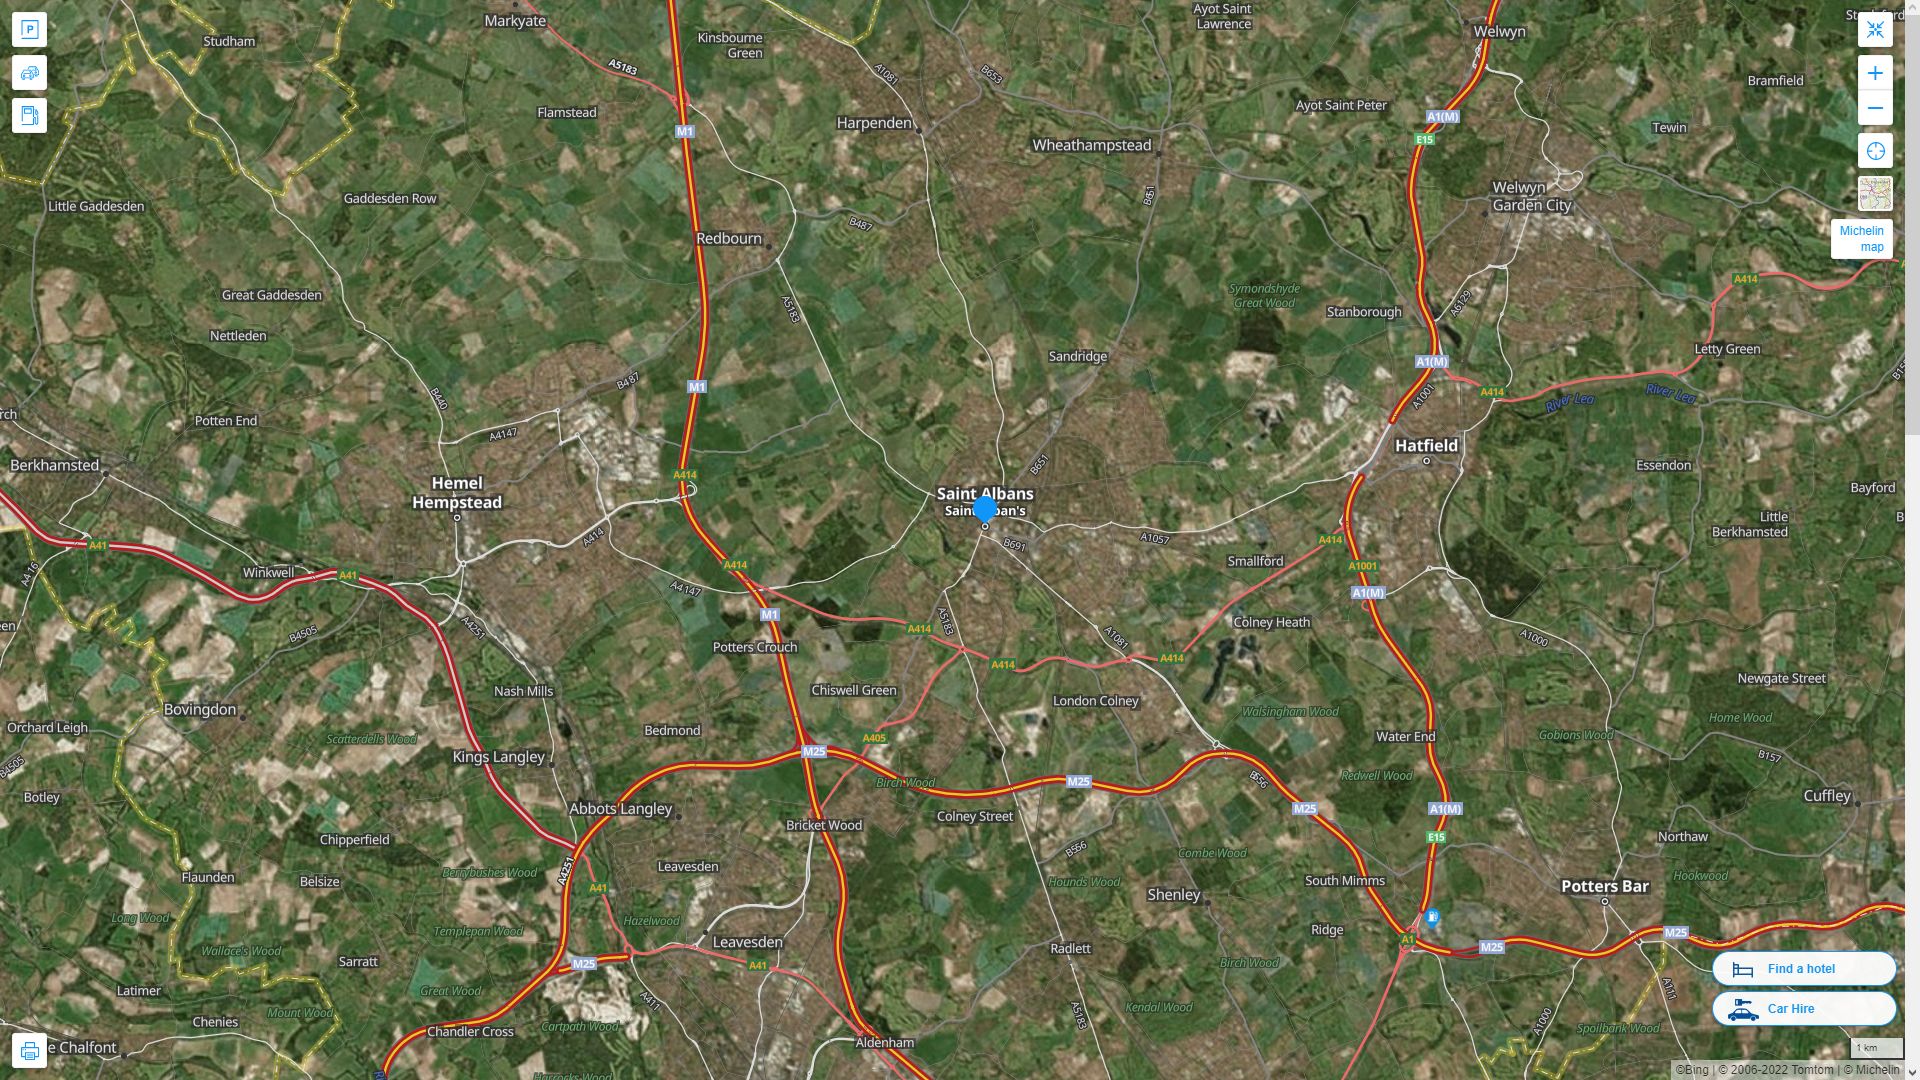 St Albans Royaume Uni Autoroute et carte routiere avec vue satellite